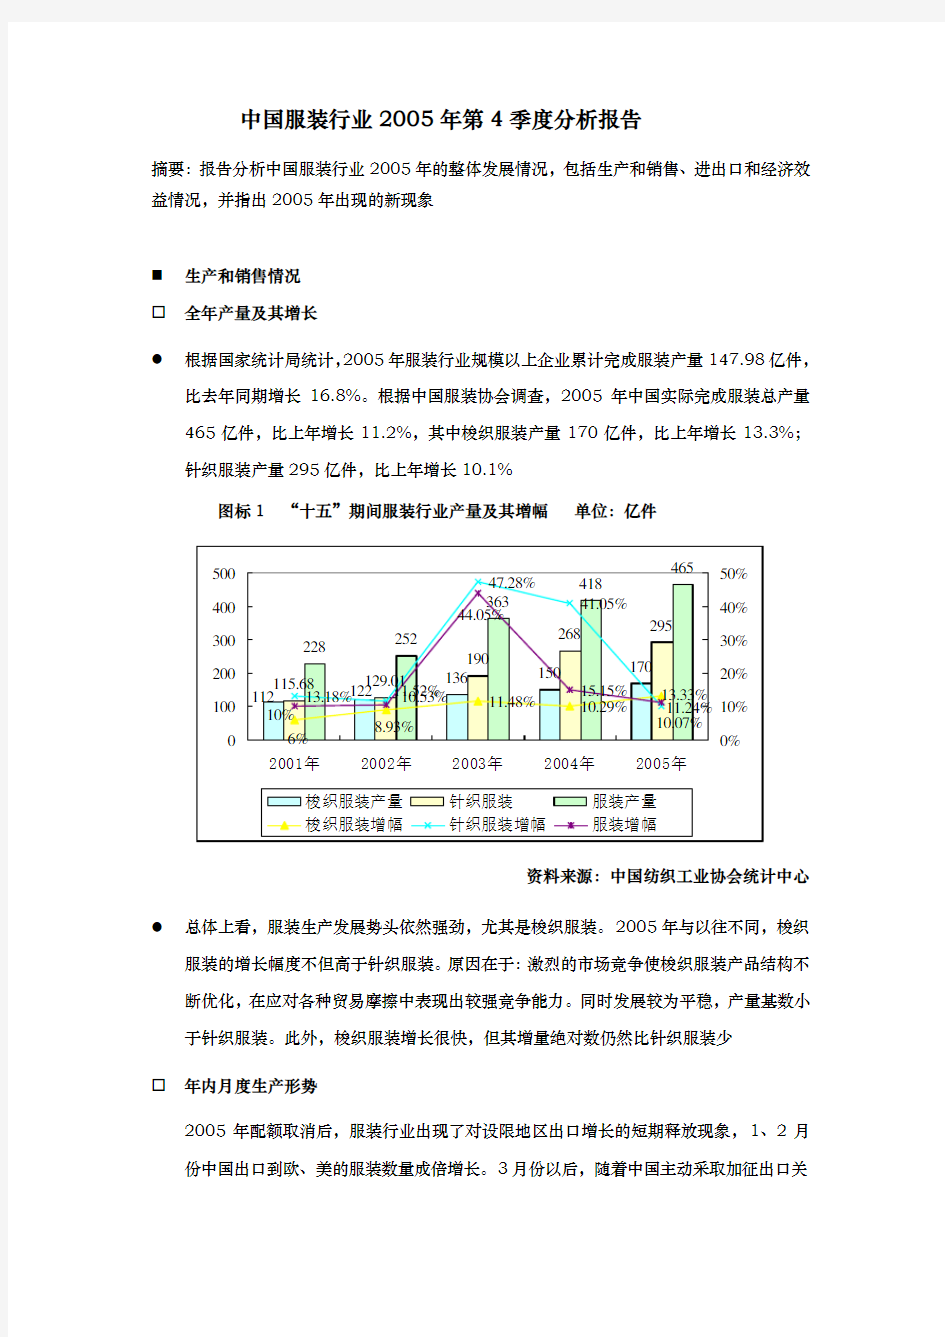 中国服装行业季度分析报告模版